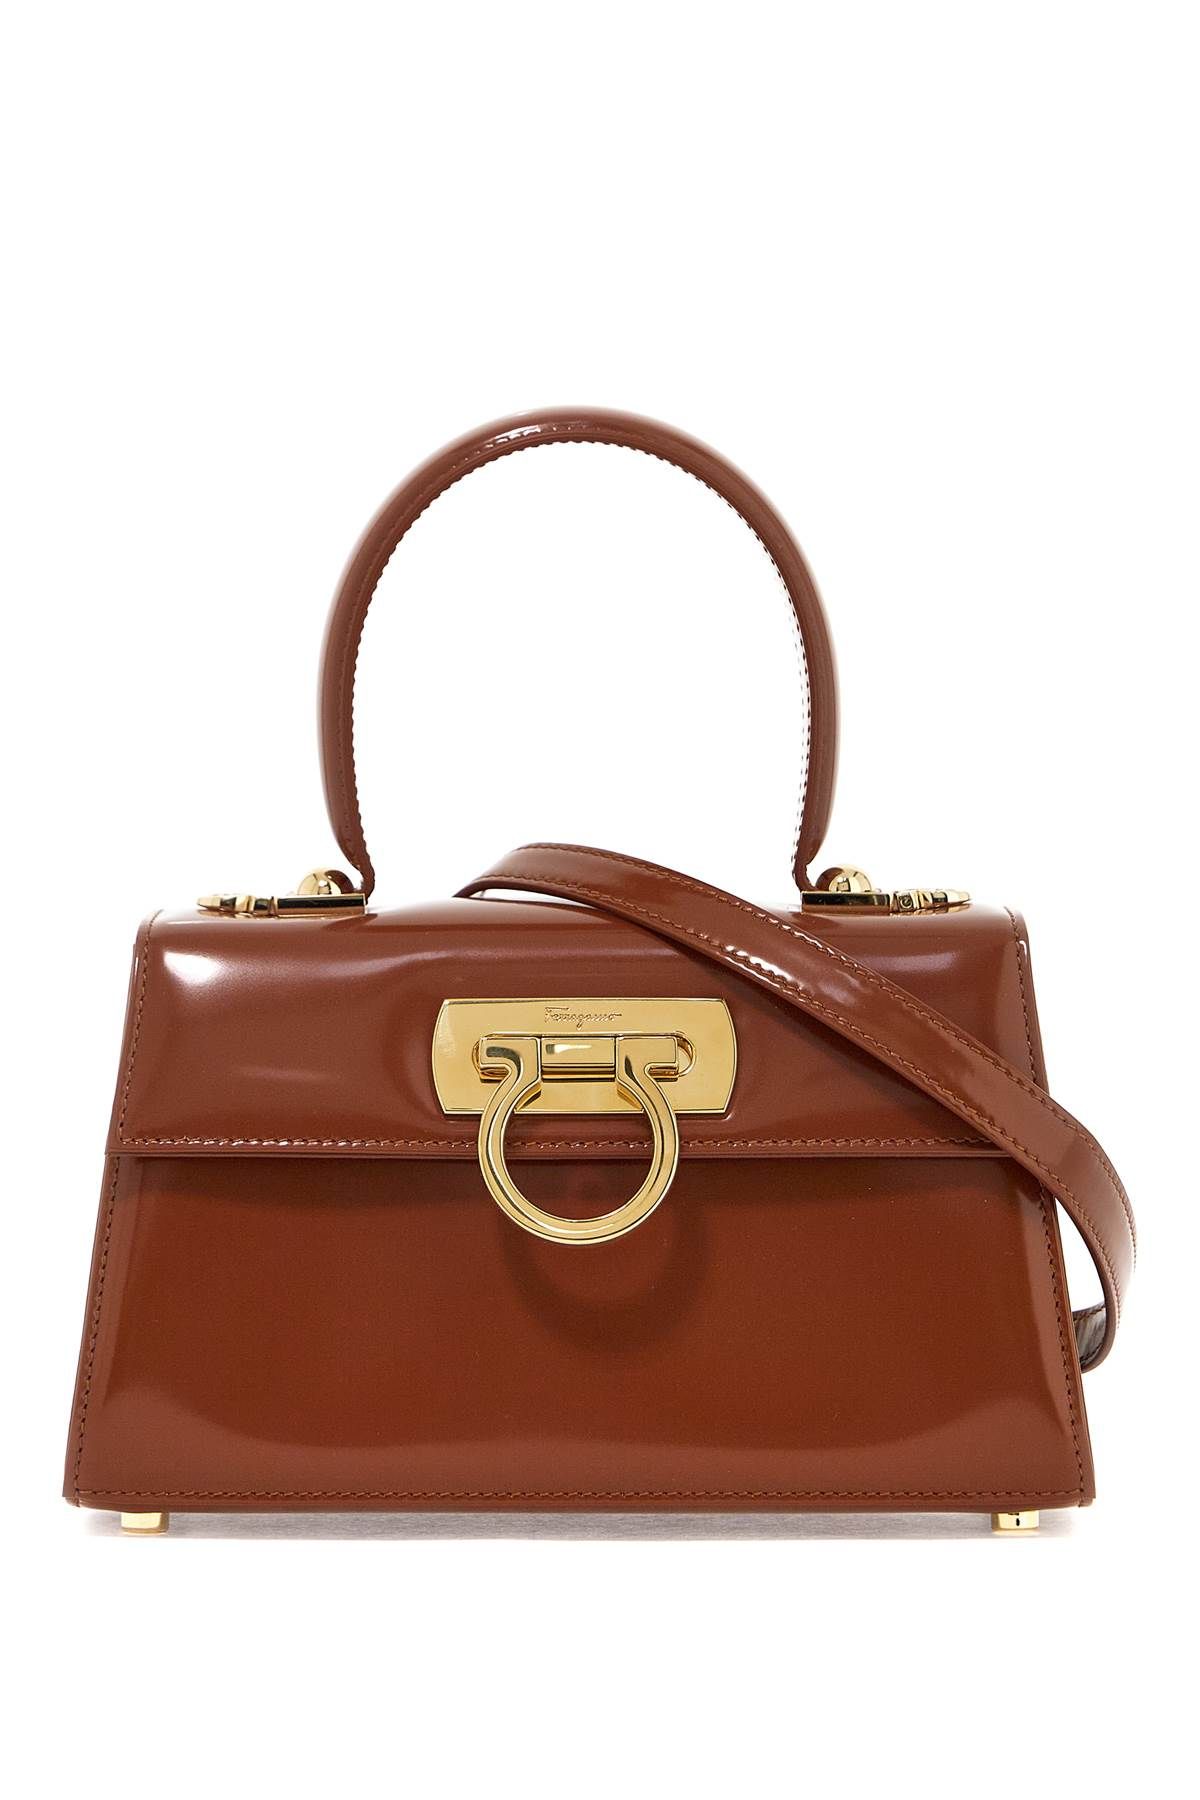 Ferragamo FERRAGAMO iconic top handle handbag